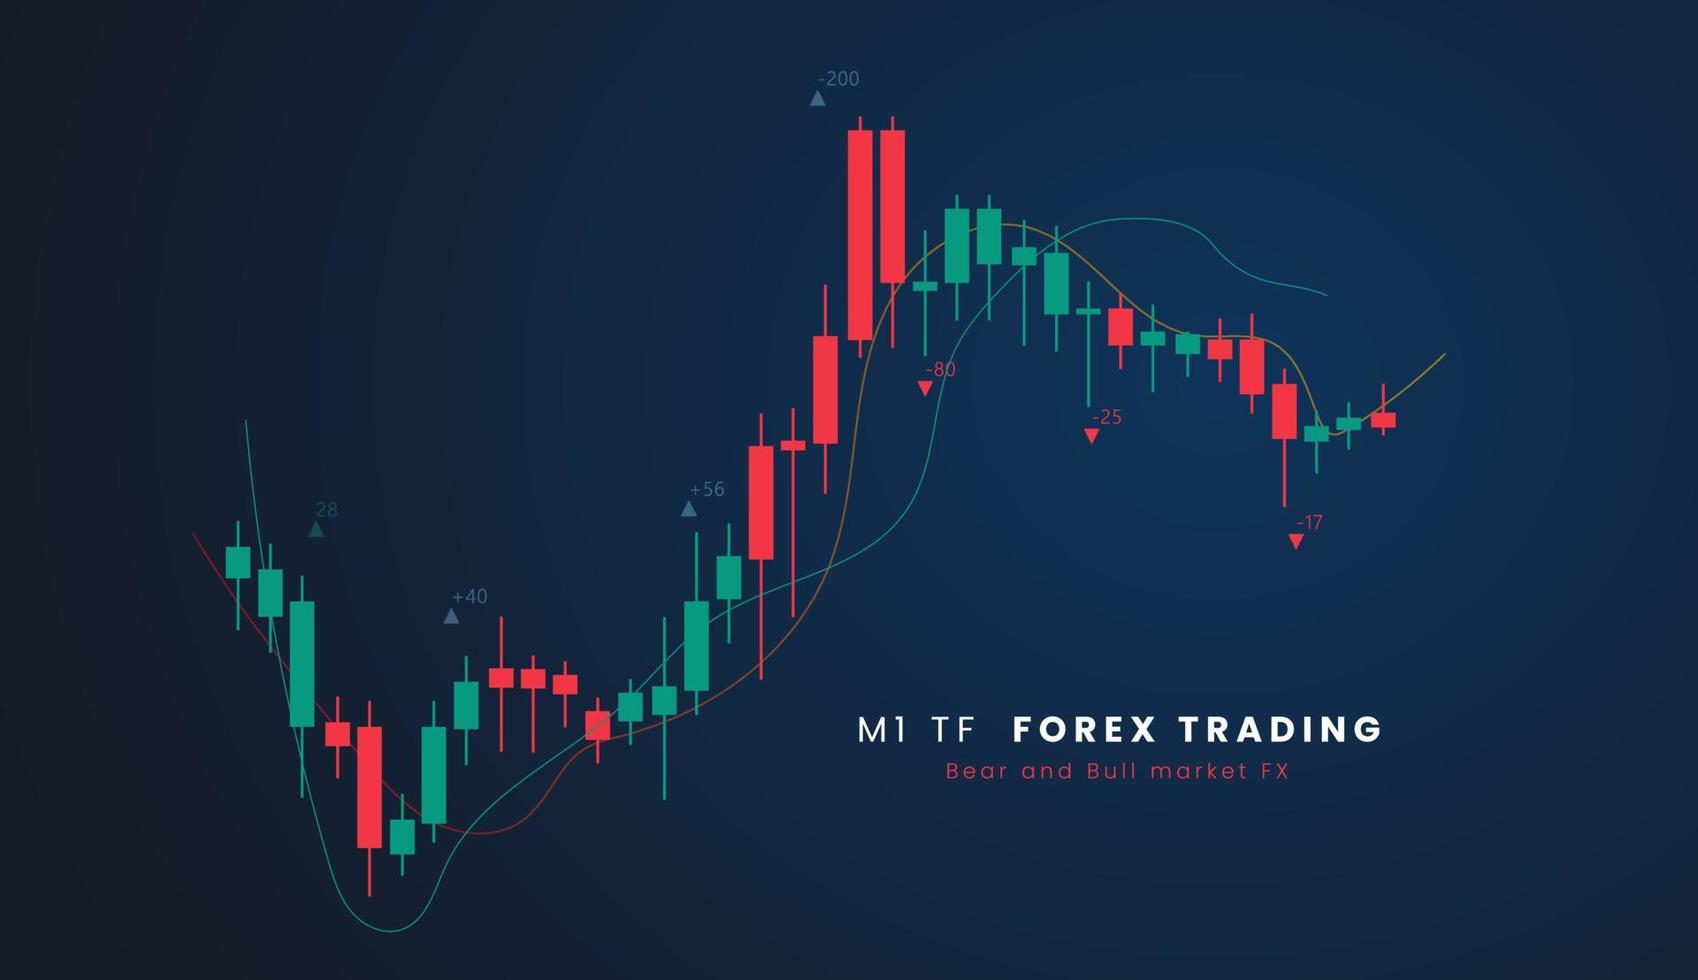 m1 tf valores mercado o forex comercio candelero grafico en gráfico diseño para financiero inversión concepto vector ilustración